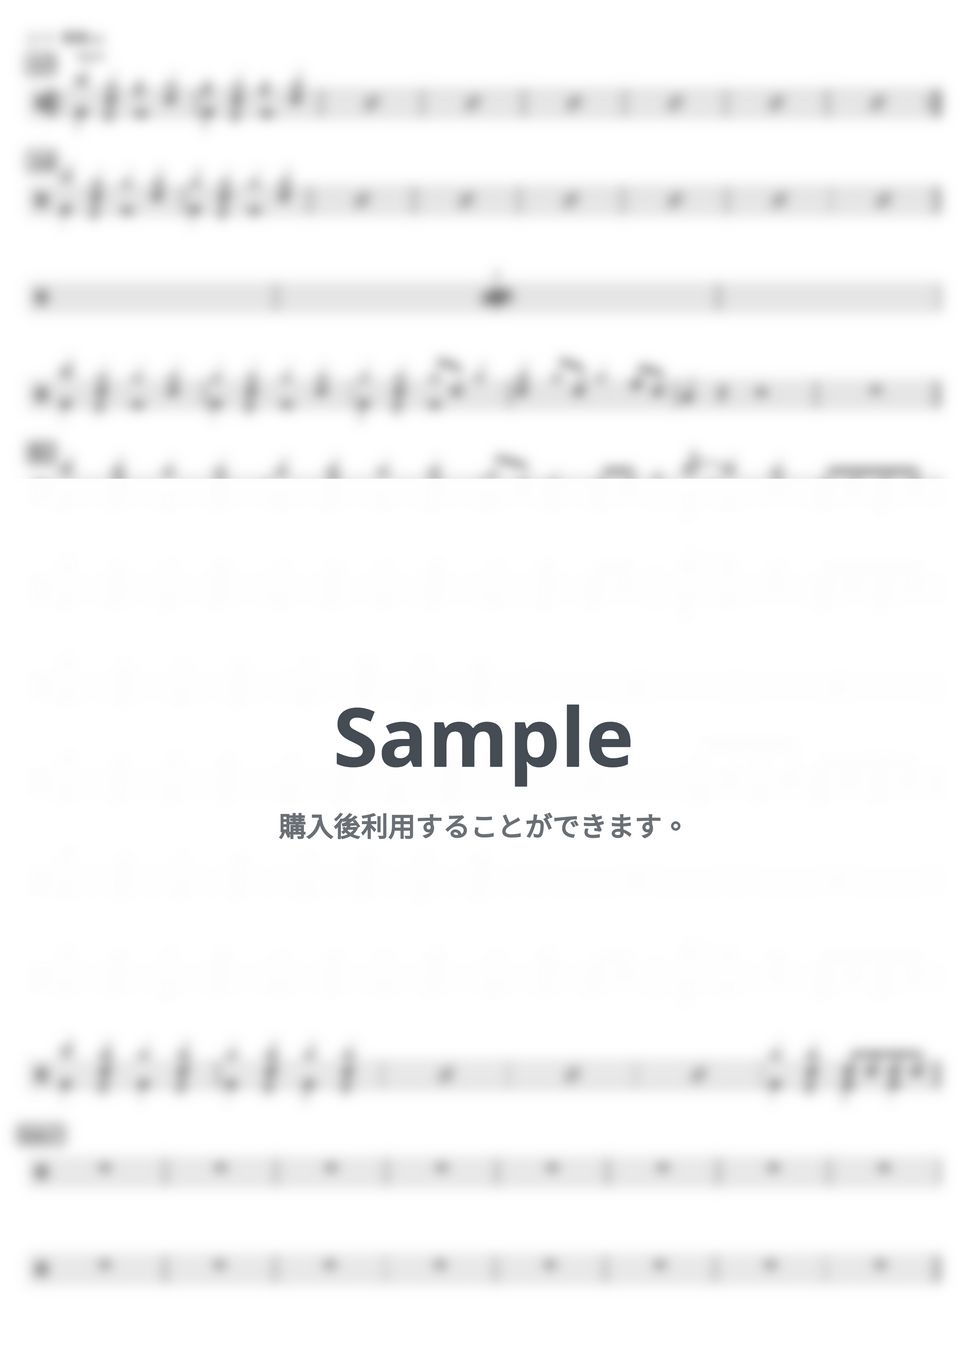 ヨルシカ - 晴る (難易度別セット) by kamishinjo-drum-school